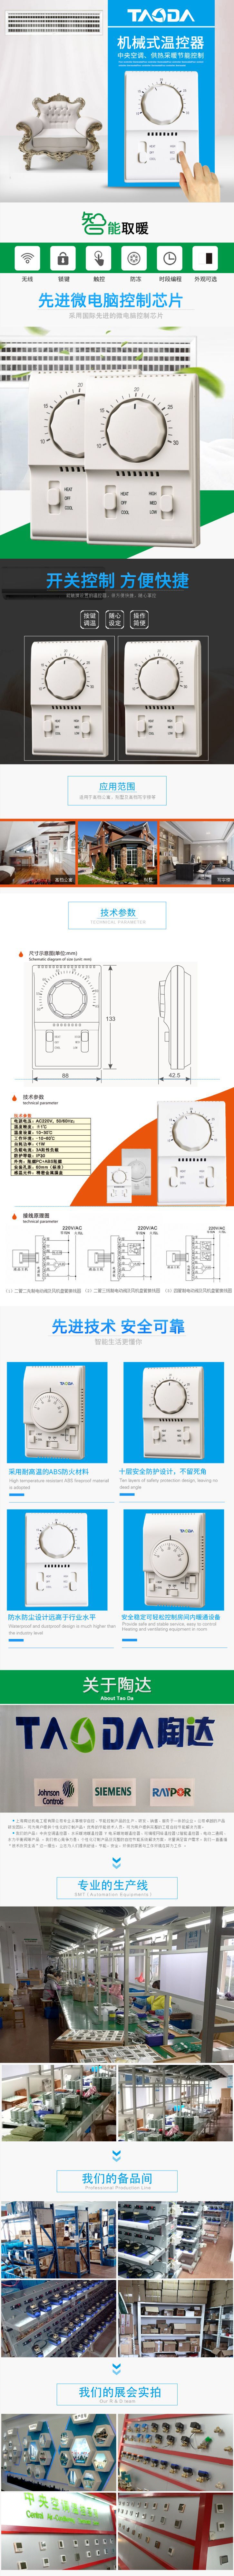 机械式温控器 温控器机械式 T2000 温控器 四管制  拨盘温控器示例图1